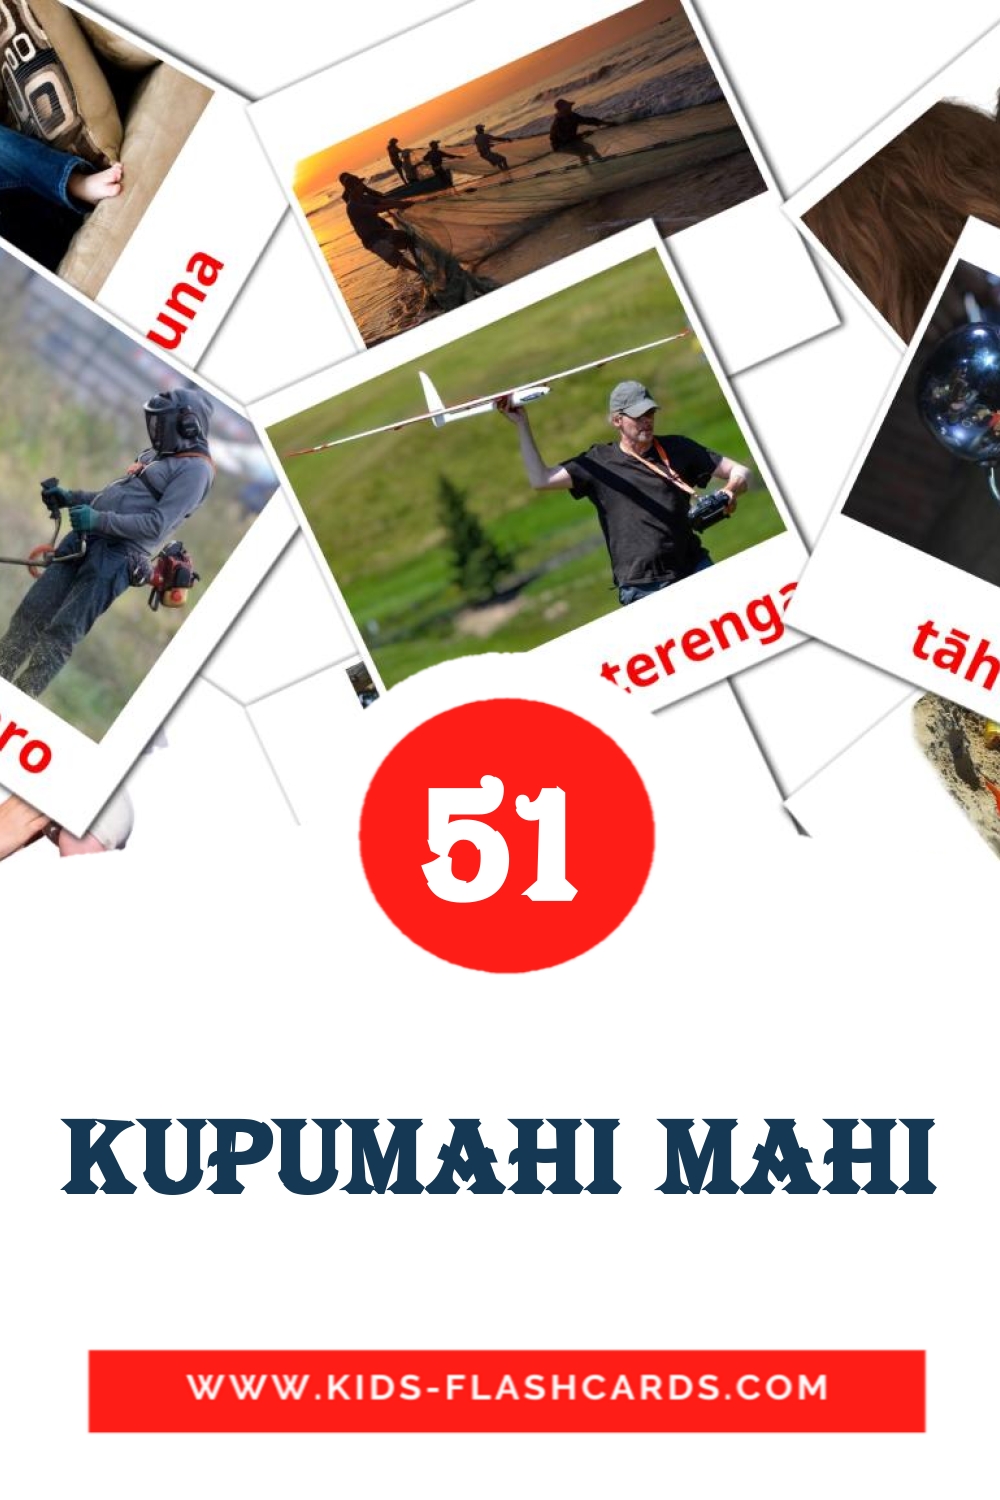 51 Kupumahi mahi fotokaarten voor kleuters in het maori